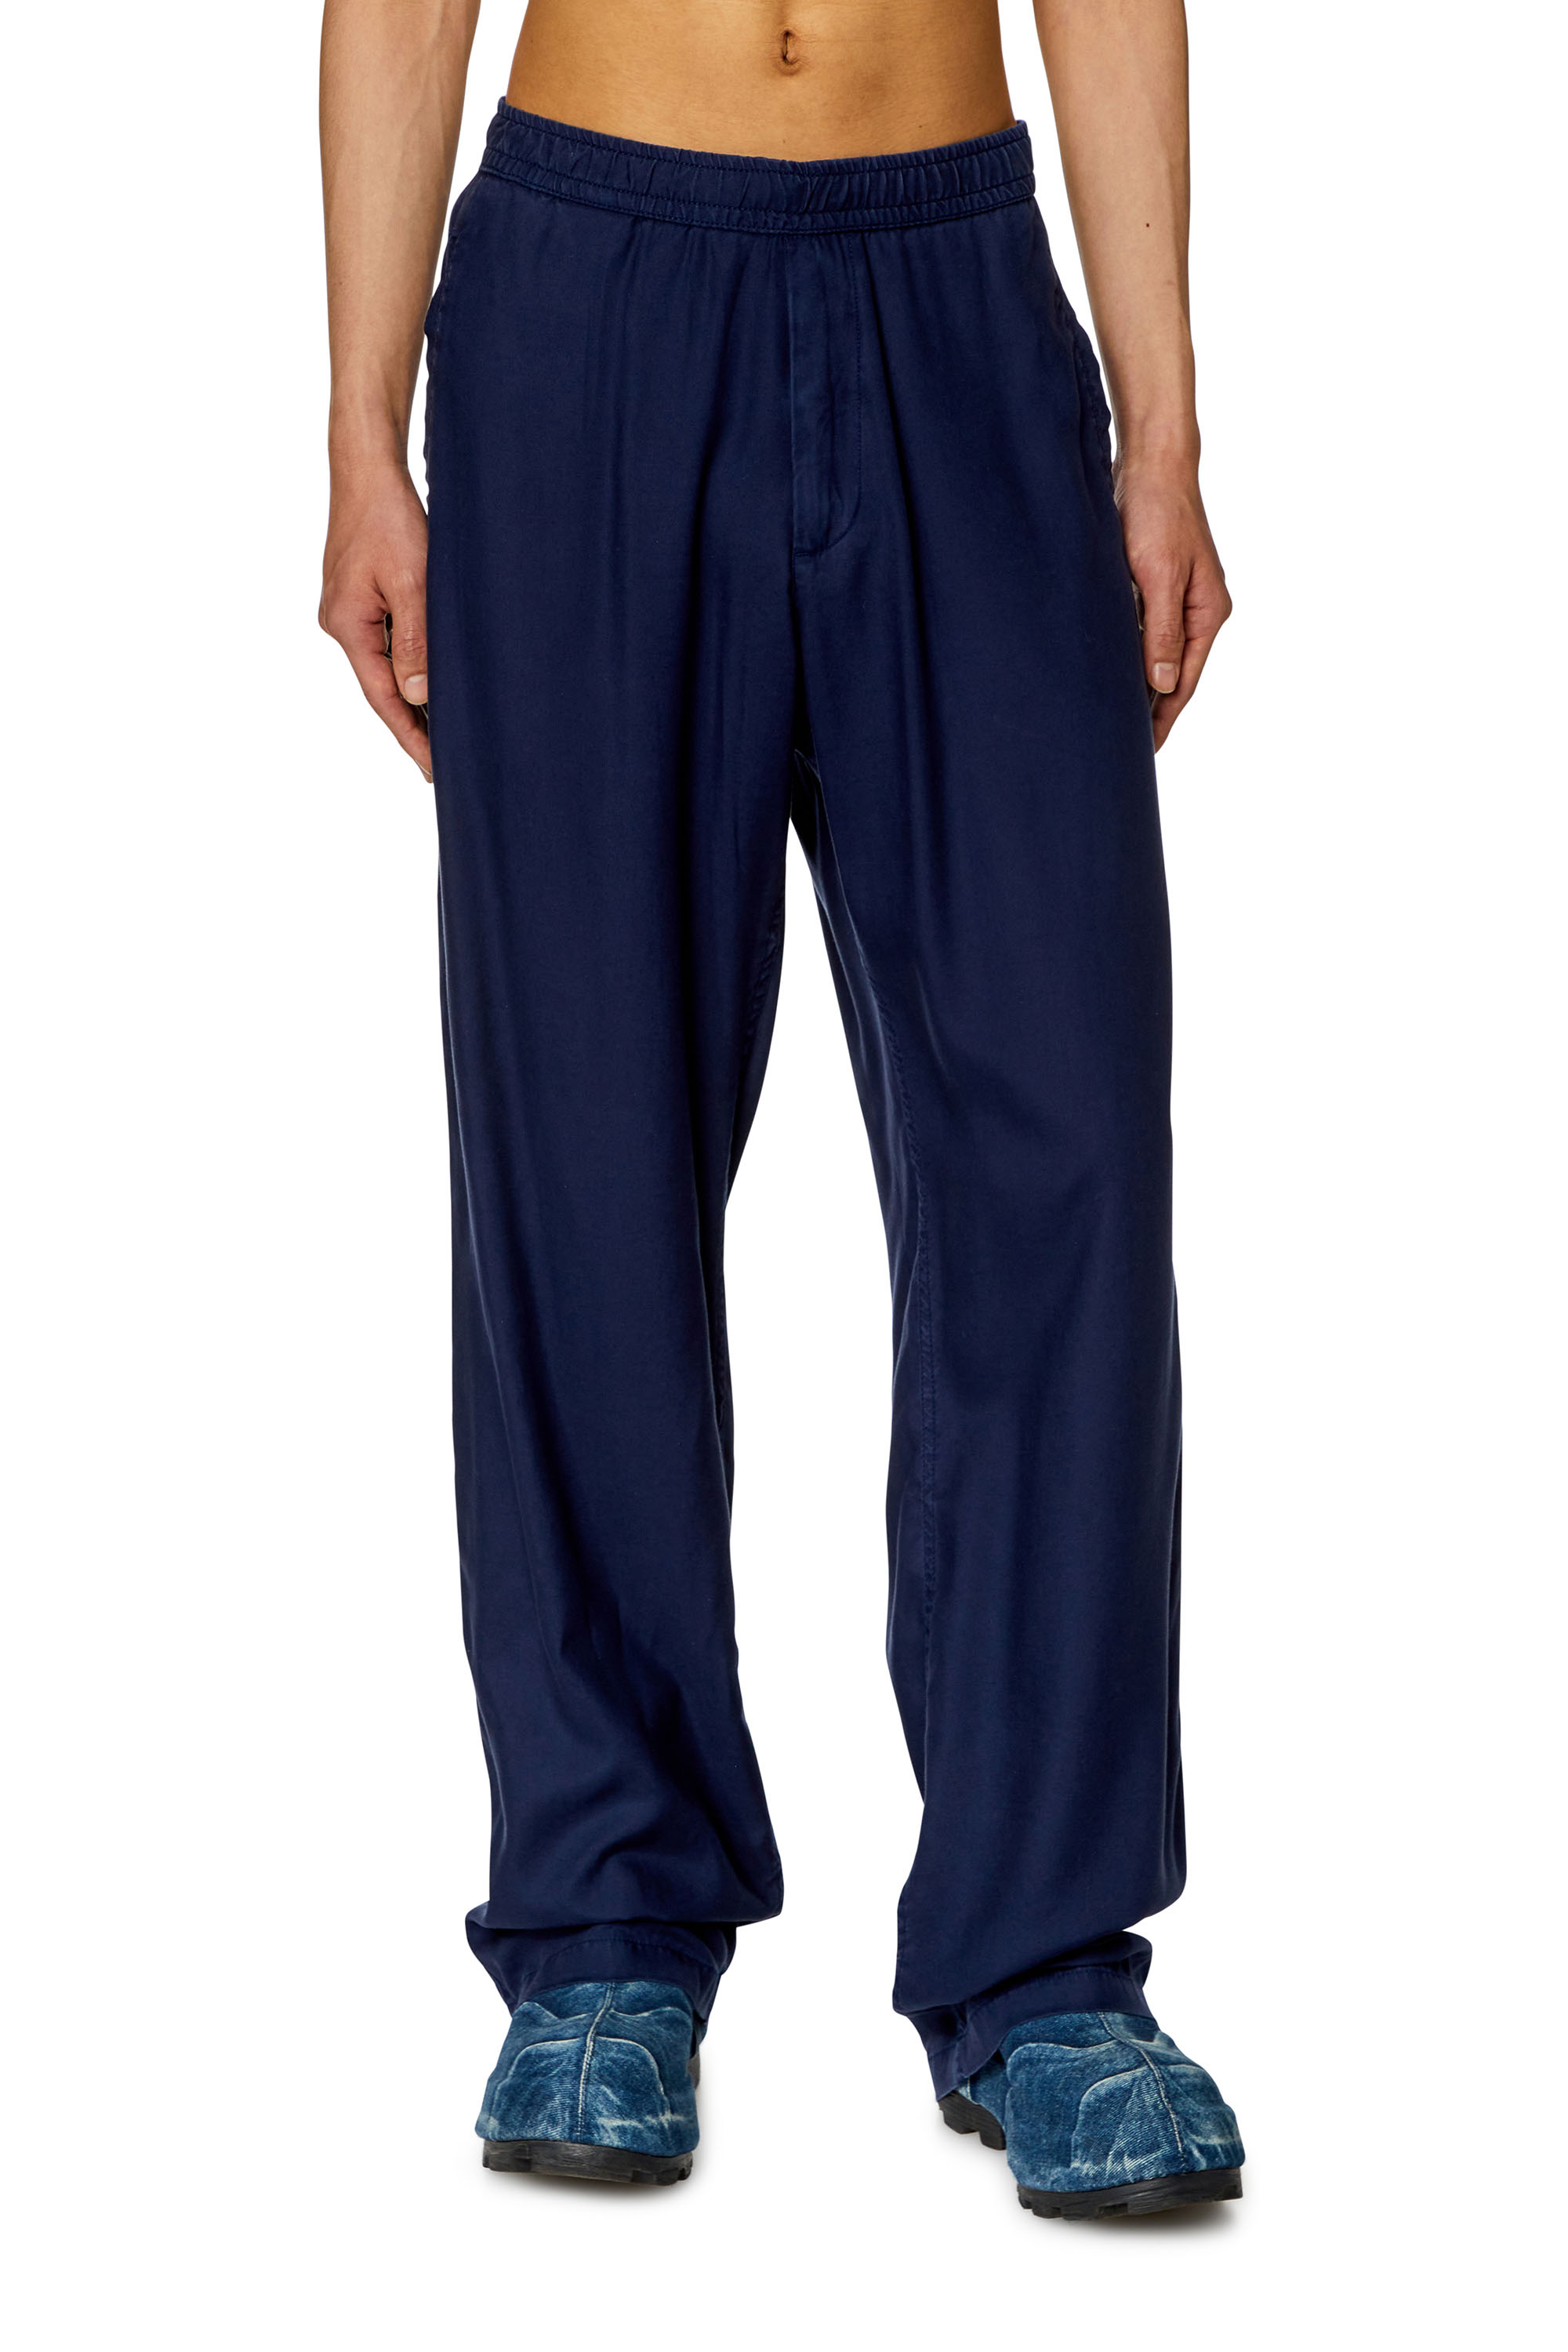 Diesel - Pantalón fluido en sarga - Pantalones - Hombre - Azul marino